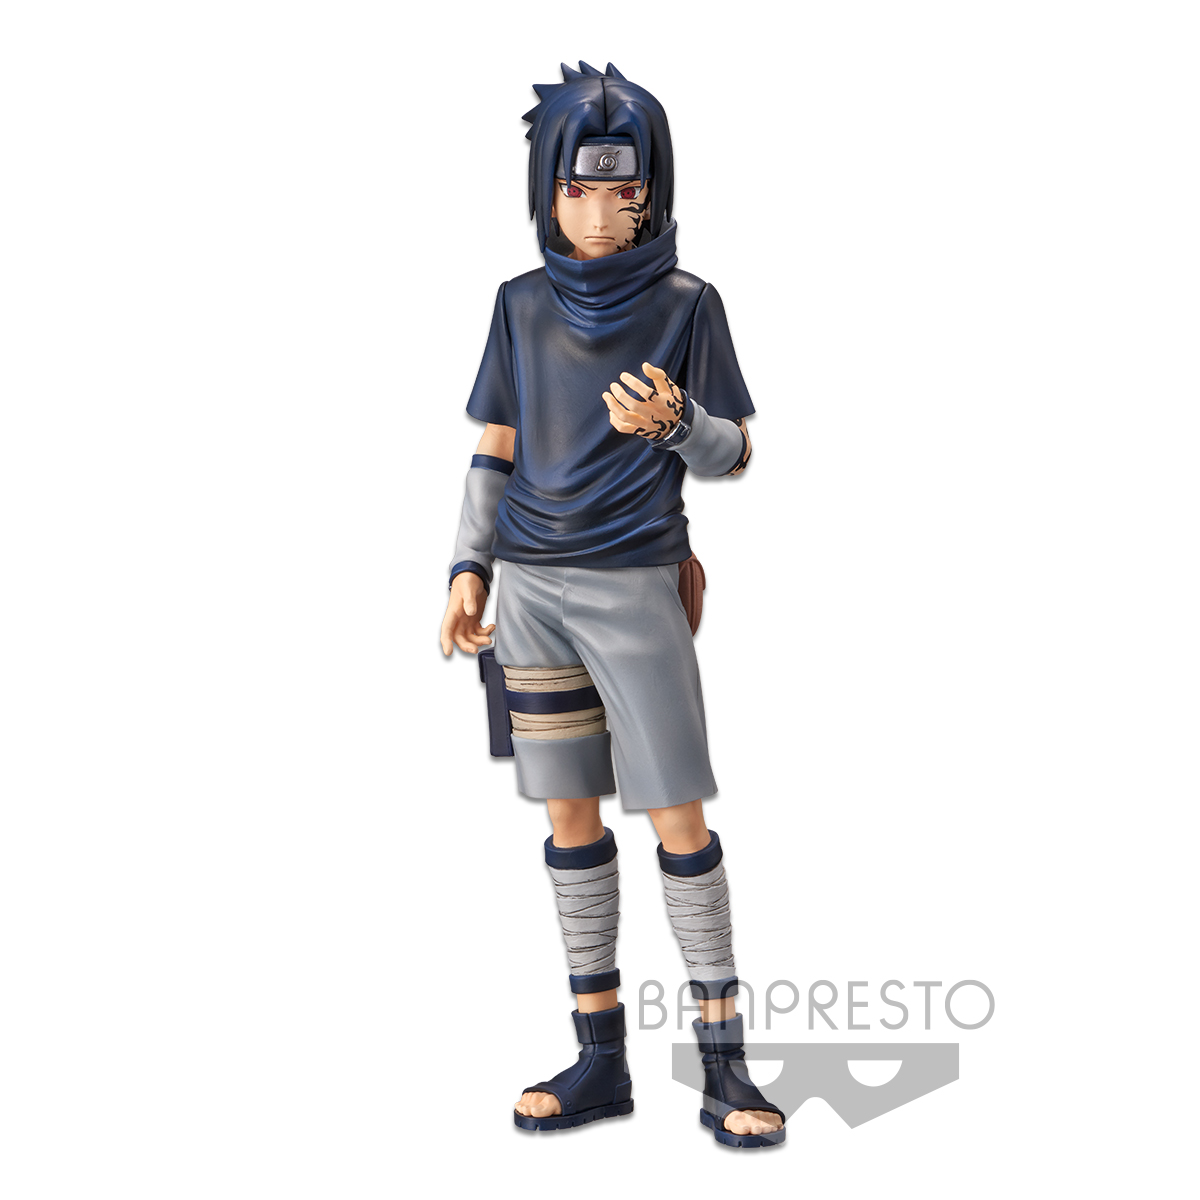 Banpresto Naruto Shippuden grandista Kakashi Sasuke Ver.2 Figure 